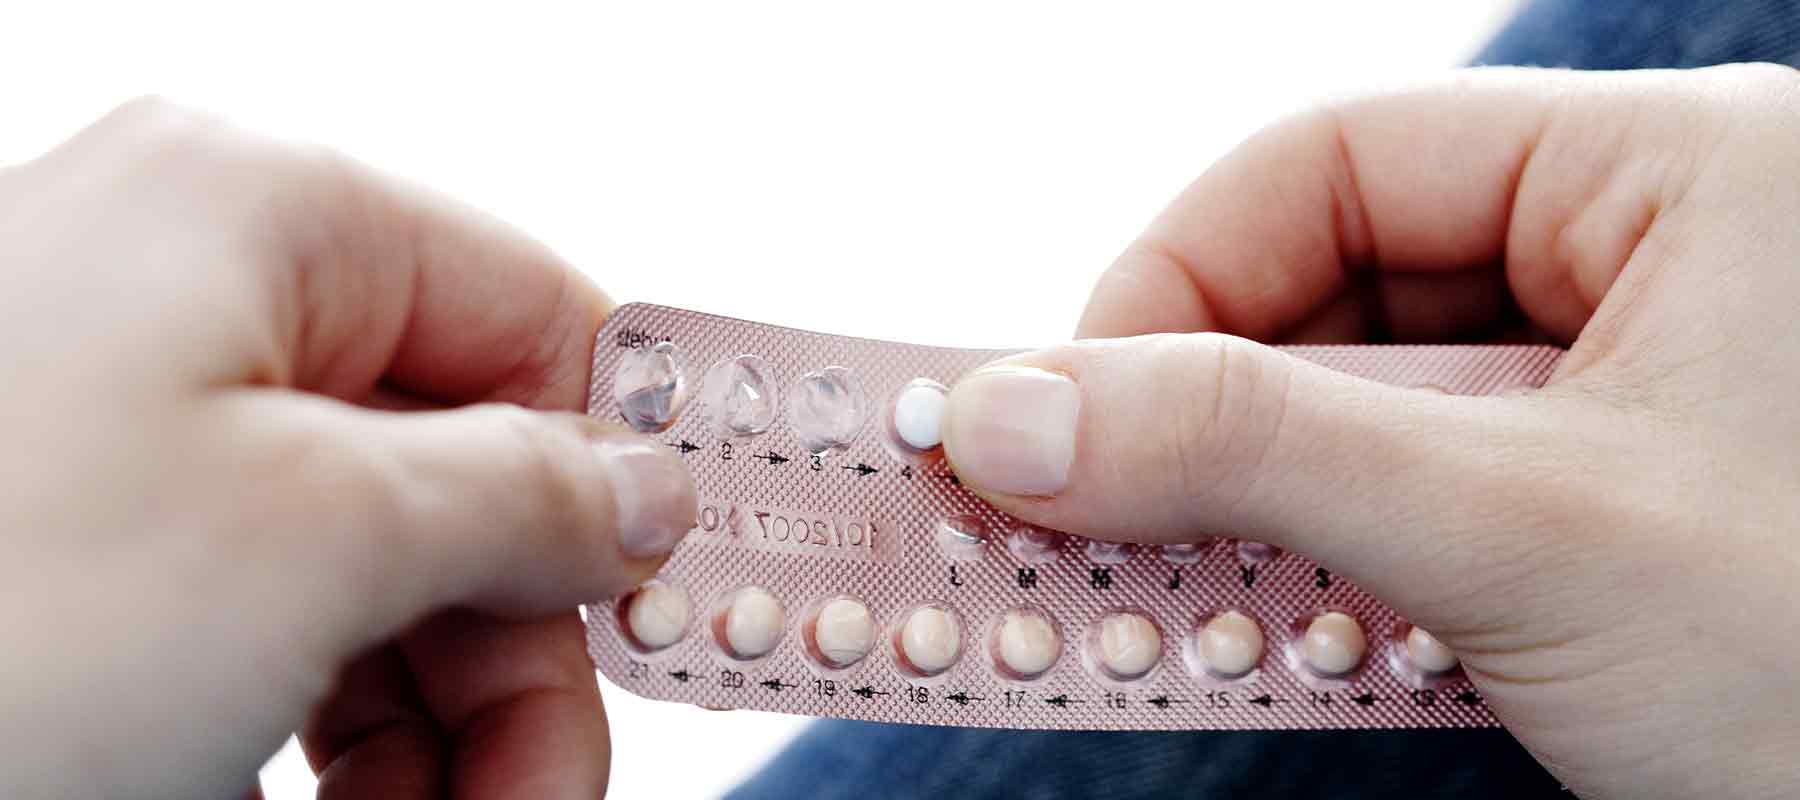 После применения противозачаточных. Mini Pill противозачаточные. Комбинированные гормональные контрацептивы. Гормональные методы контрацепции таблетки. Оральная контрацепция таблетки.